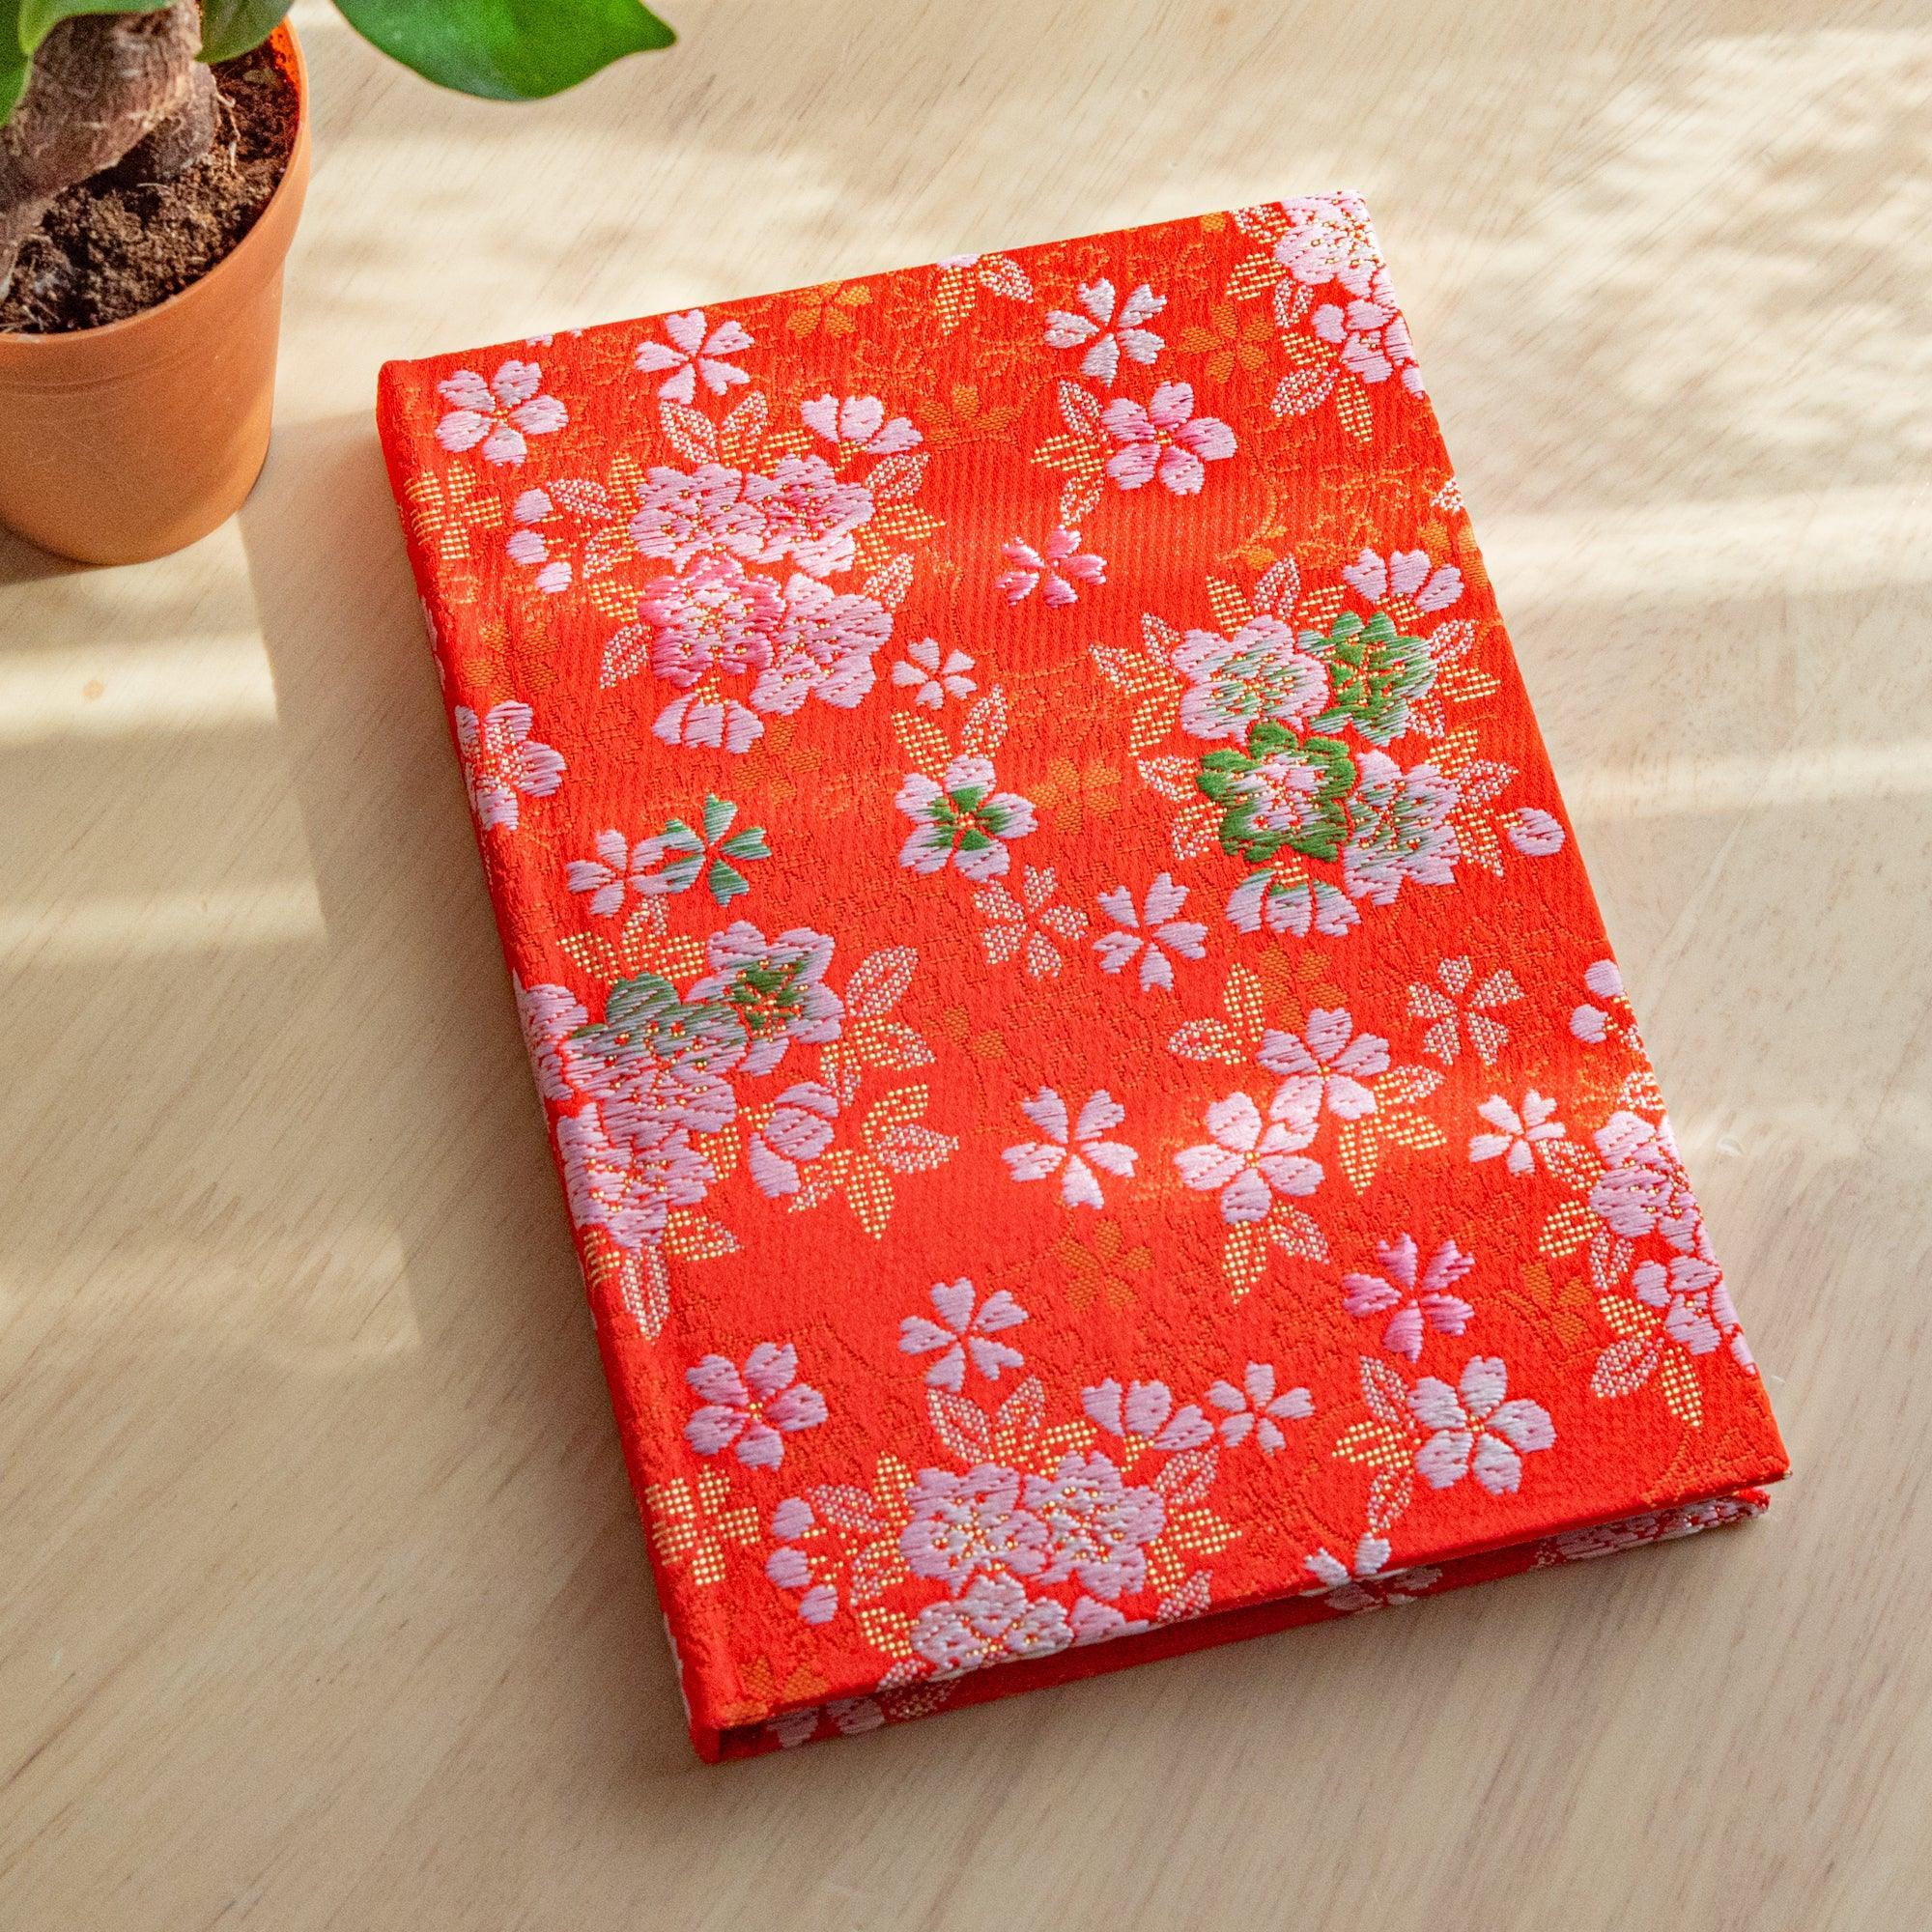 nishijin-textile-sakura-ensemble-notebook-or-b6-morisan-komorebi-stationery-1 - Komorebi Stationery